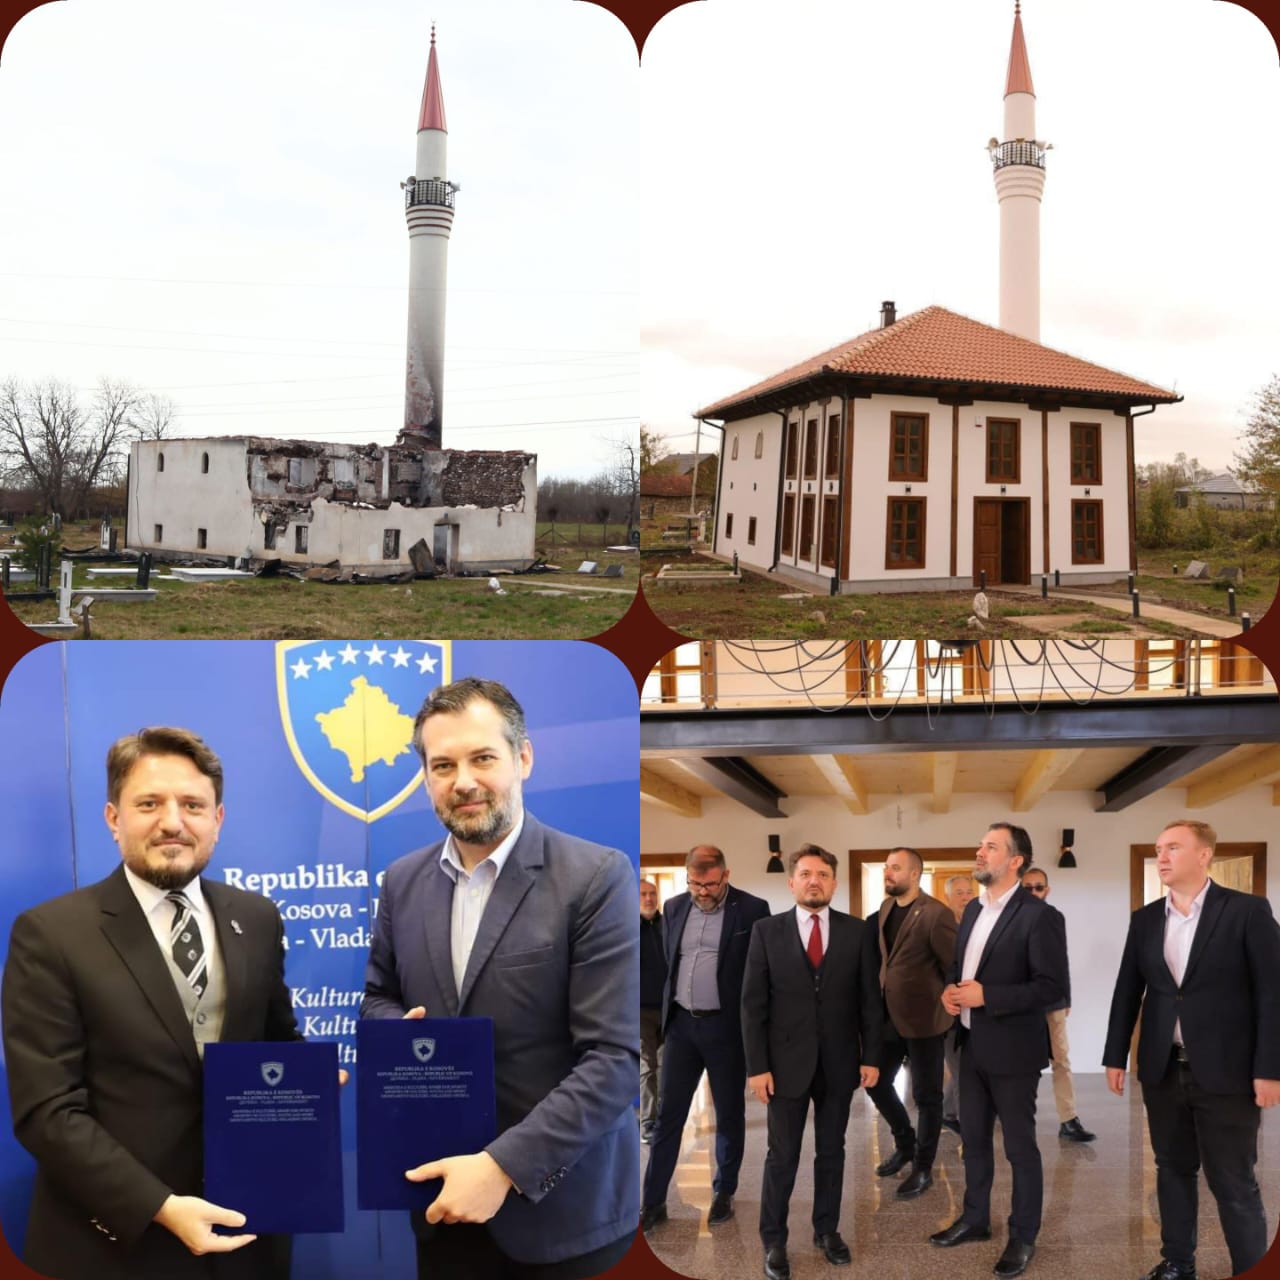 تمويل مشروع ترميم “جامع درانووس” يعد أولى ثمرات التعاون بين المشيخة الإسلامية ووزارة الثقافة الكوسوفية بعد أن تم توقيع اتفاقية تعاون بينهما عام 2022